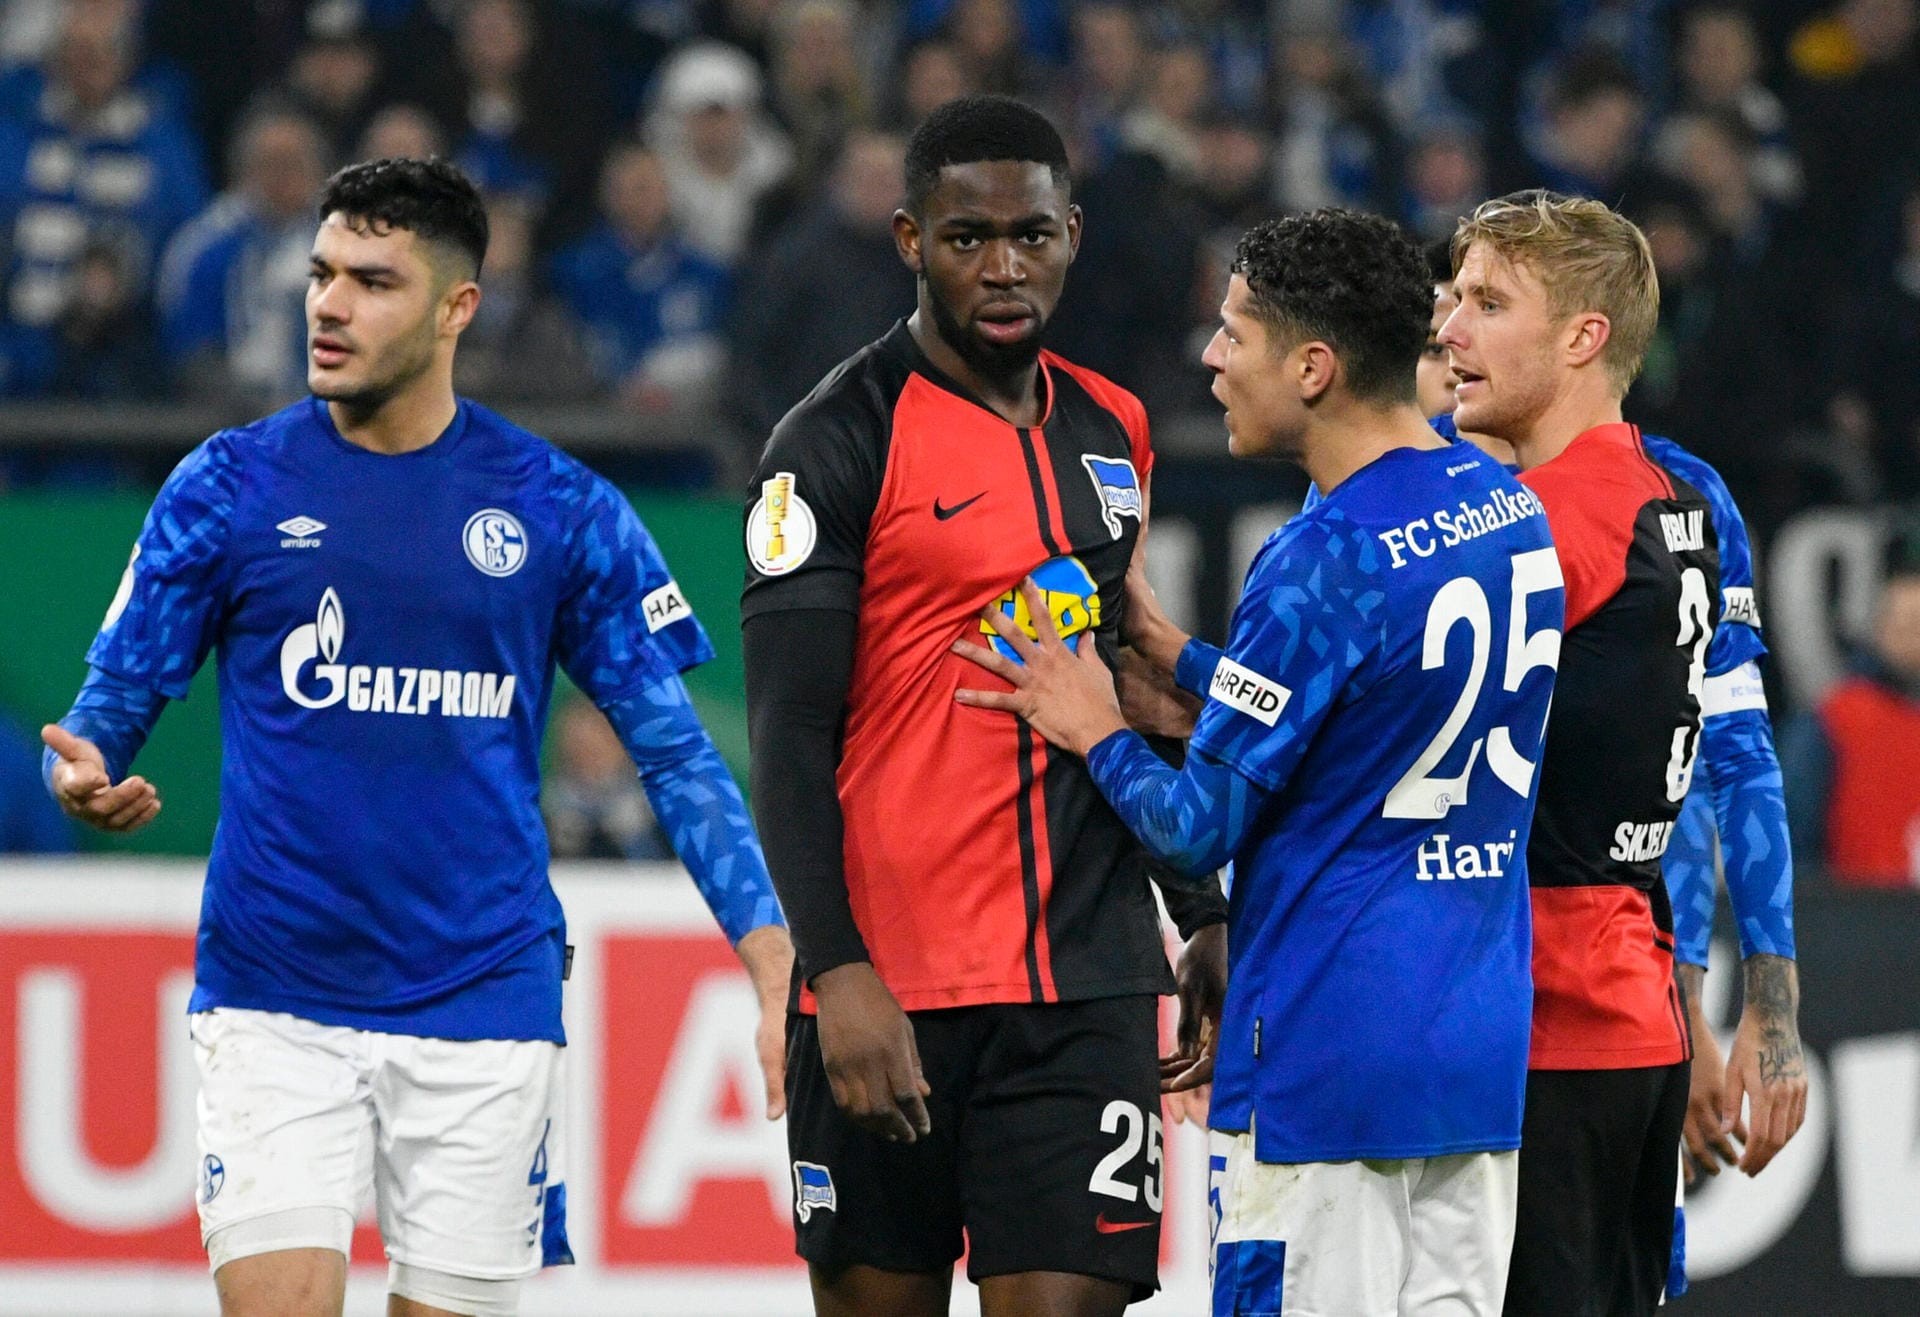 Während des DFB-Pokalspiels zwischen dem FC Schalke 04 und Hertha BSC ist Berlins Verteidiger Jordan Torunarigha offenbar von Zuschauern rassistisch beleidigt worden. Vorfälle dieser Art sind leider bereits in der Vergangenheit im deutschen Fußbal aufgetreten. t-online.de erinnert an neun erschütternde Vorfälle.